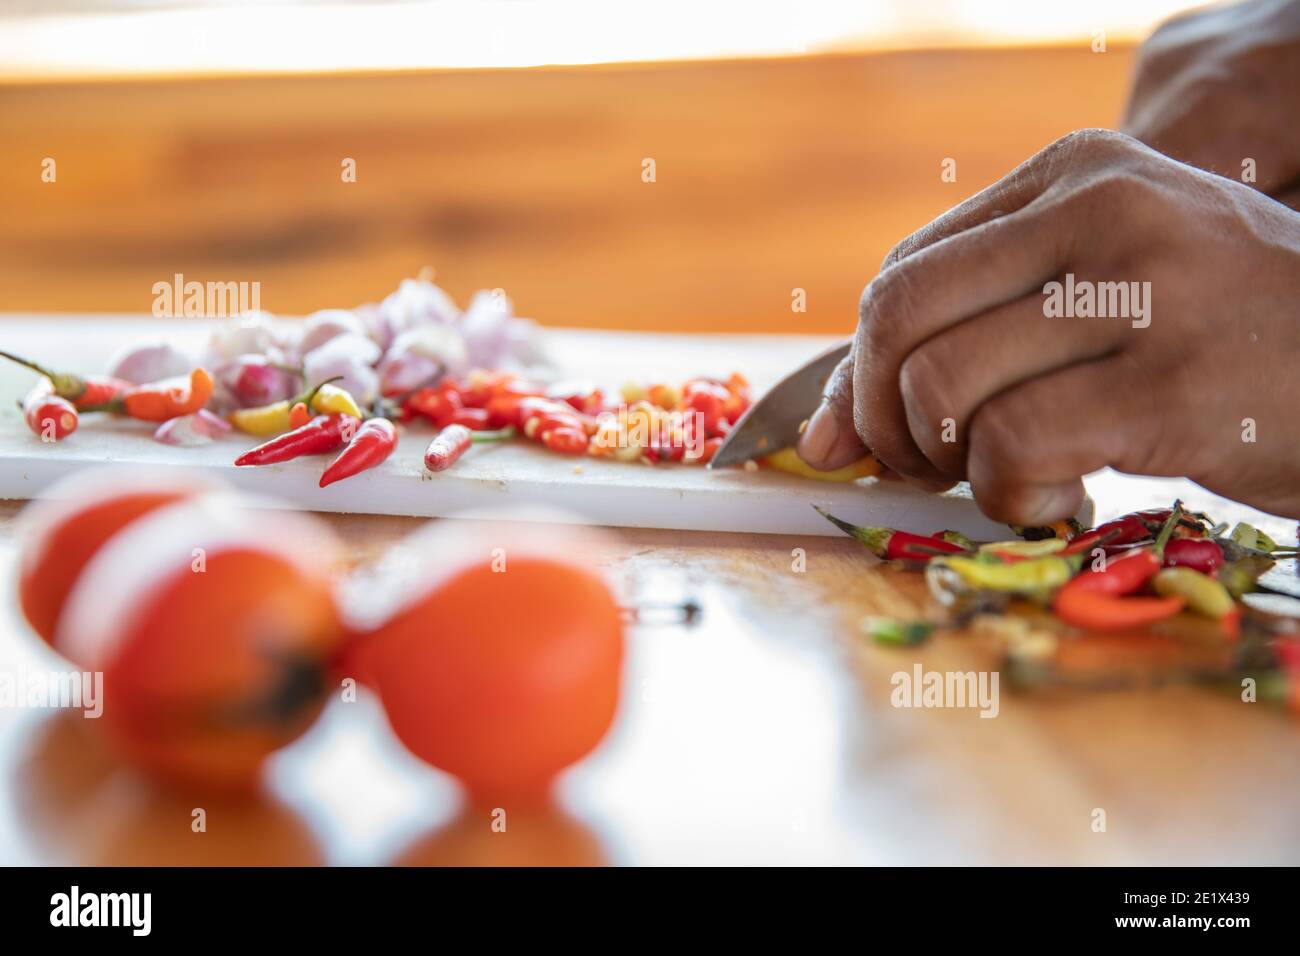 primer plano de una mano cortando cebolla blanca y chile pimienta en un tablero de la cocina con un cuchillo Foto de stock